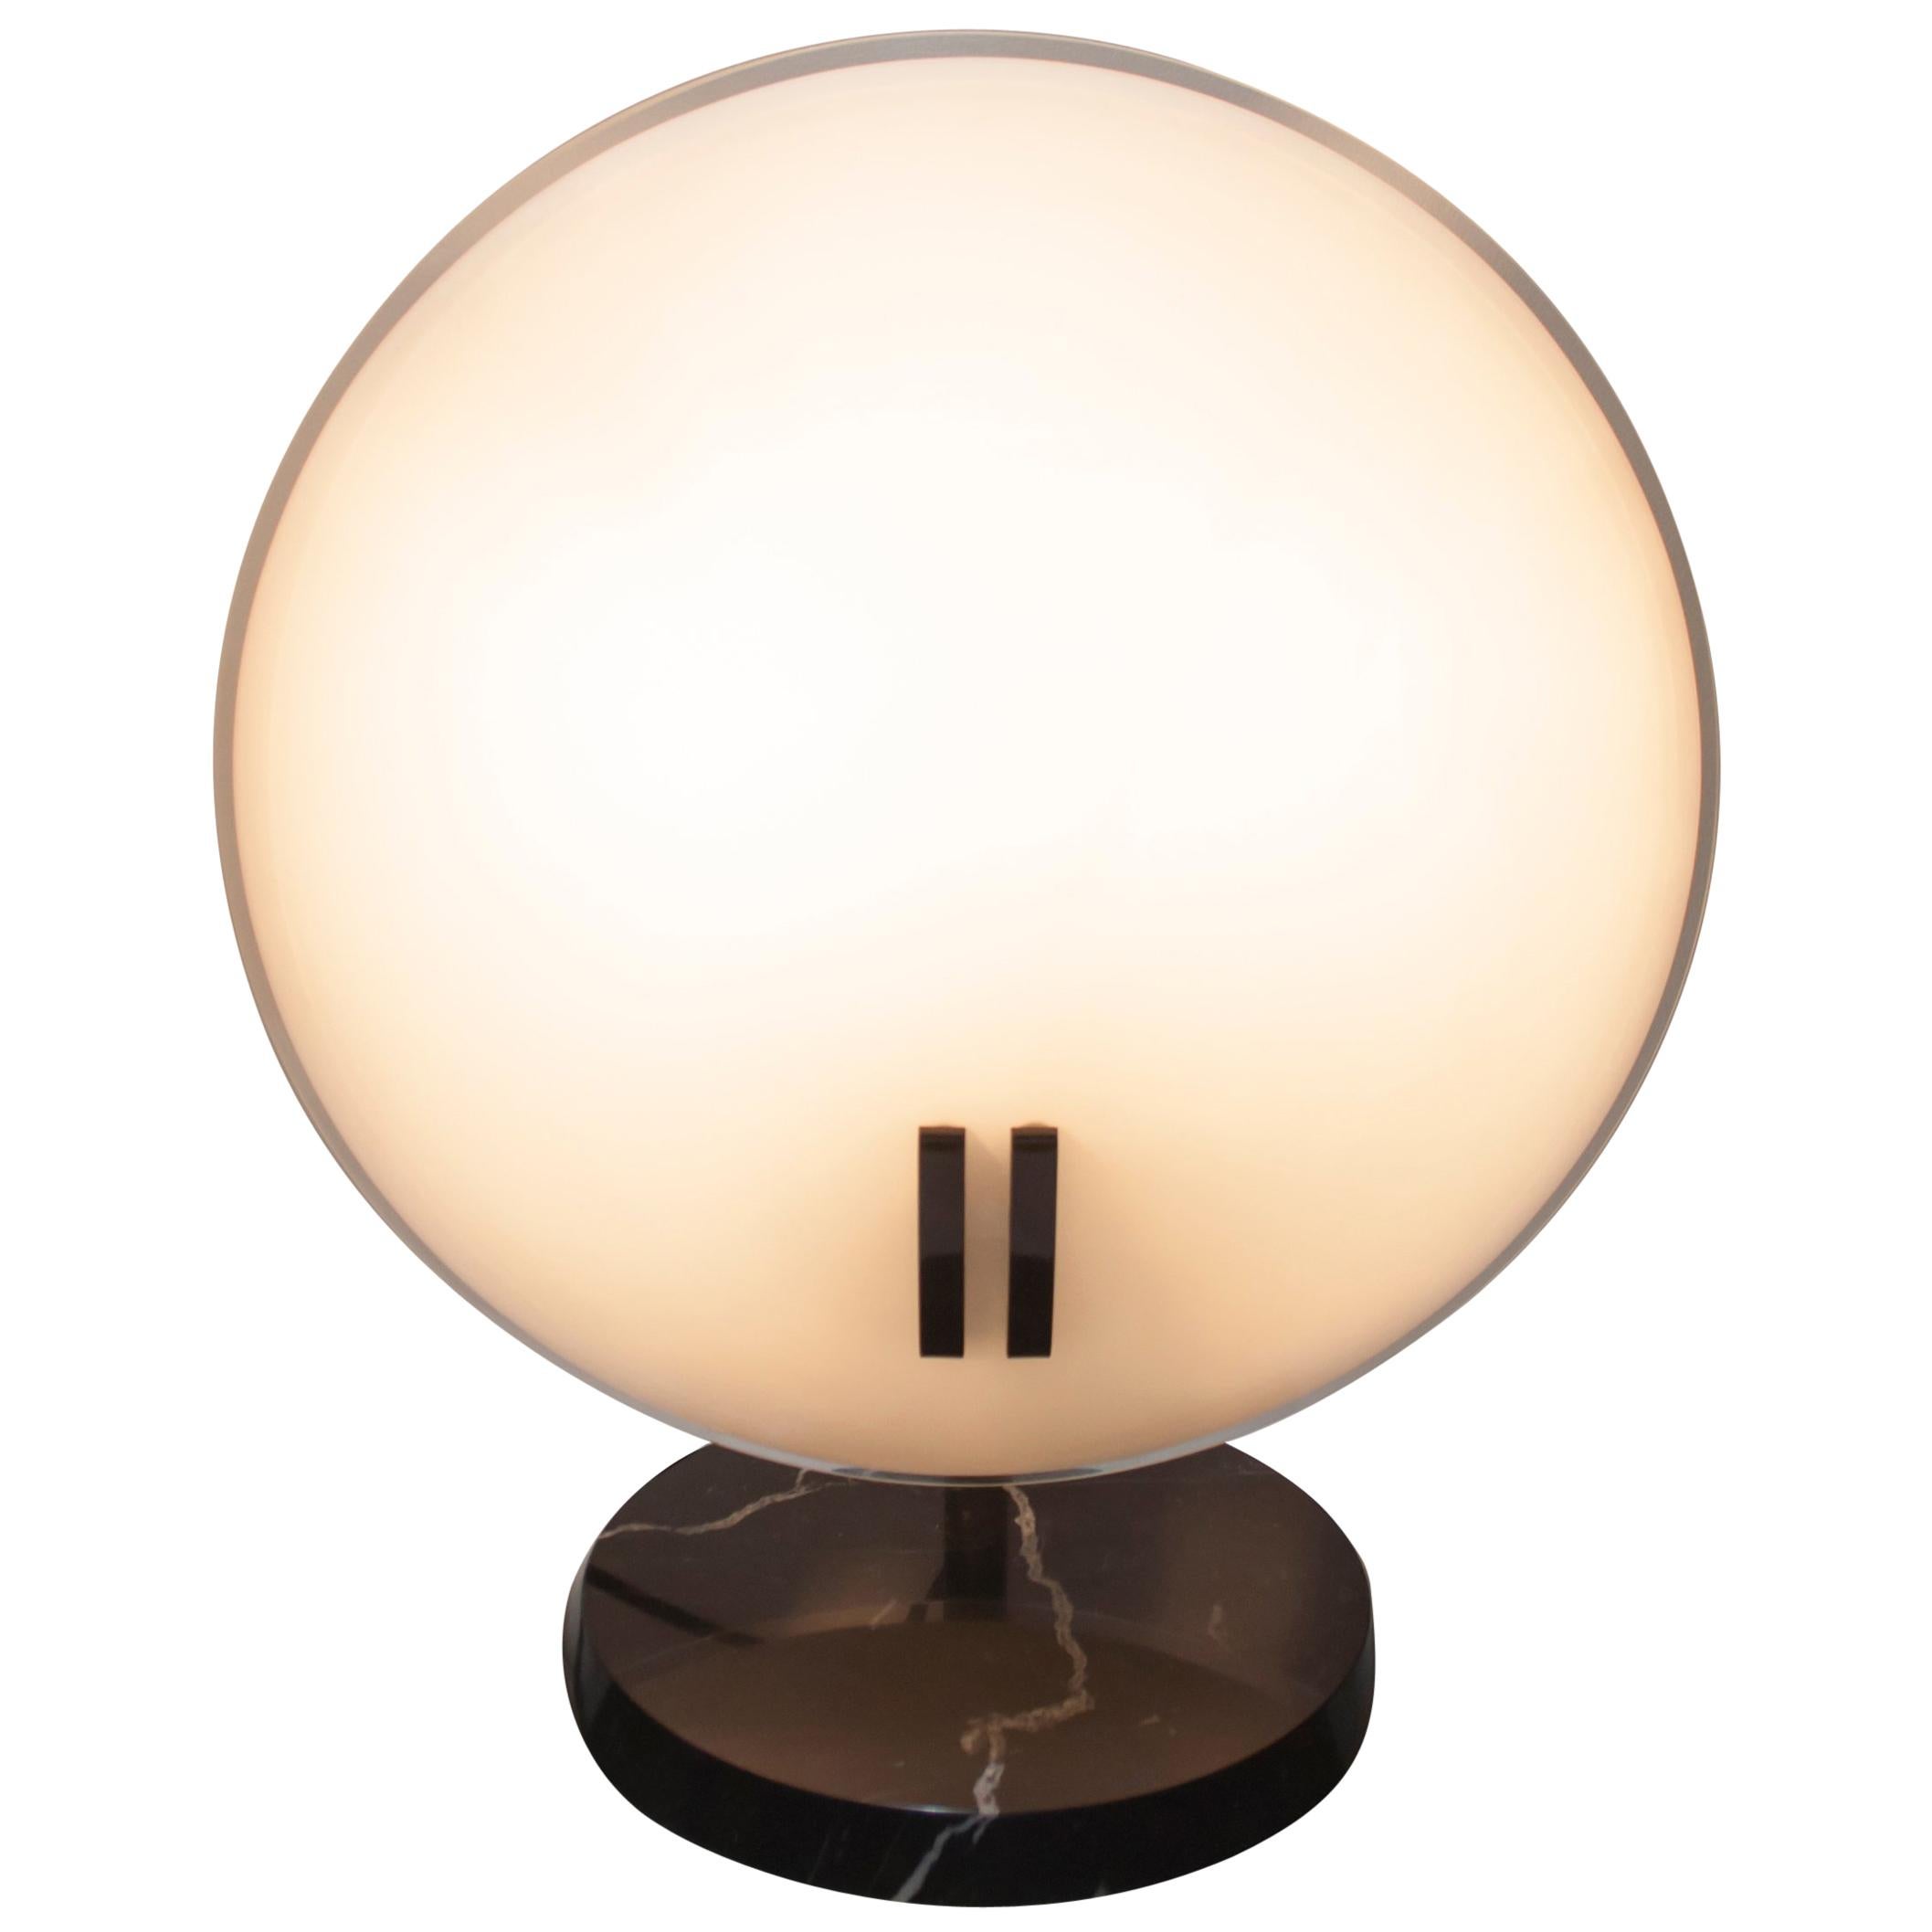 Bruno Gecchelin Italian Table Lamp "Perla" for Oluce, 1980s